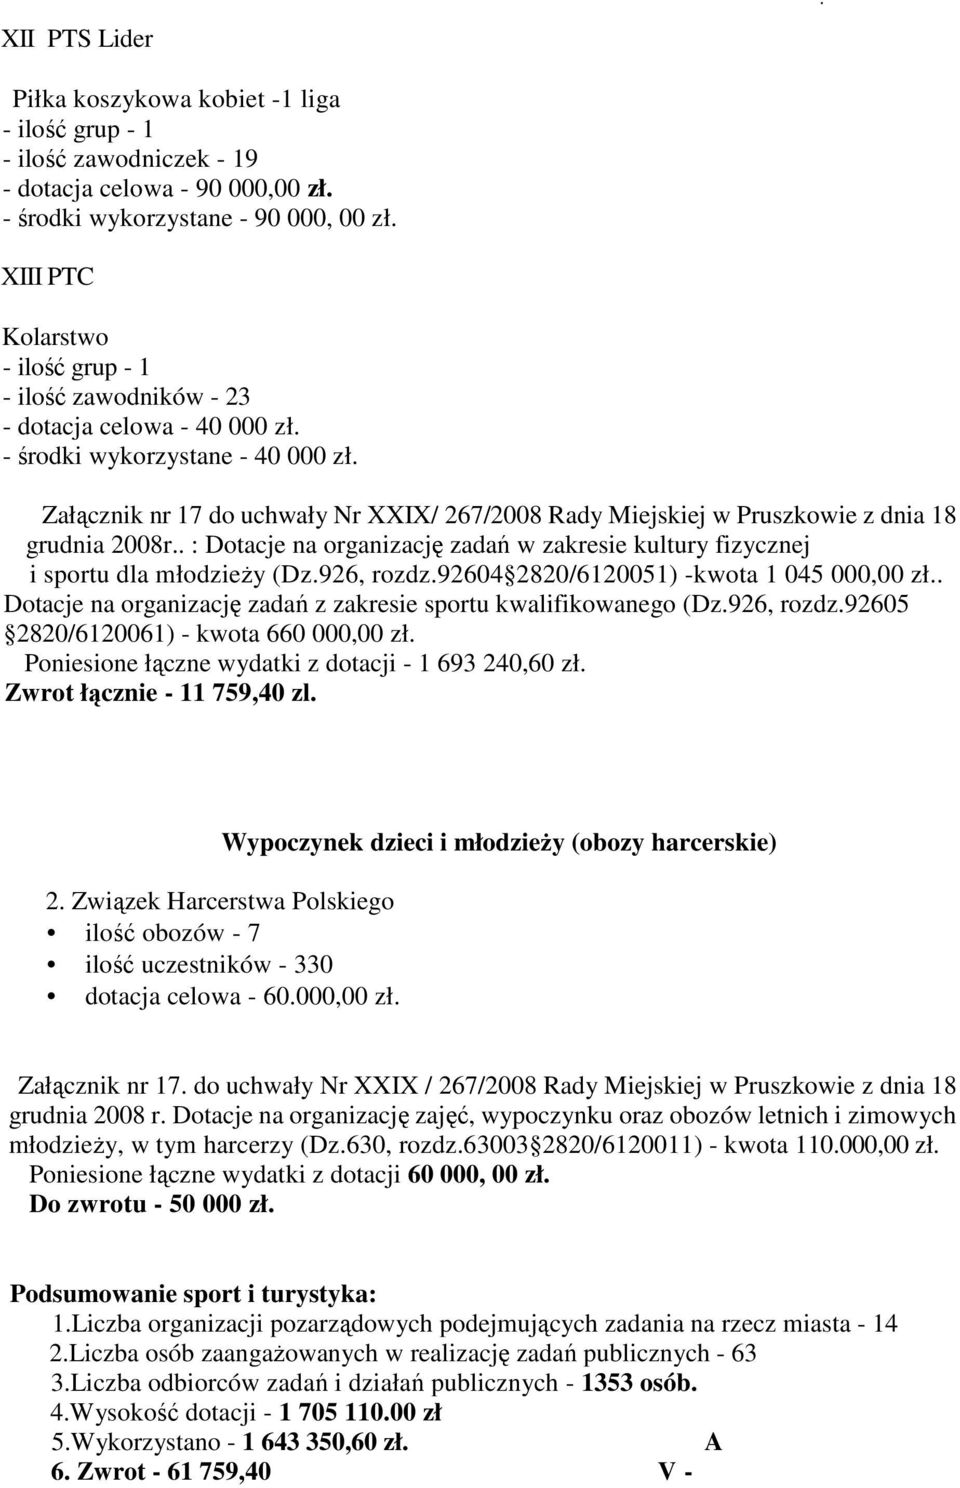 Załącznik nr 17 do uchwały Nr XXIX/ 267/2008 Rady Miejskiej w Pruszkowie z dnia 18 grudnia 2008r.. : Dotacje na organizację zadań w zakresie kultury fizycznej i sportu dla młodzieŝy (Dz.926, rozdz.